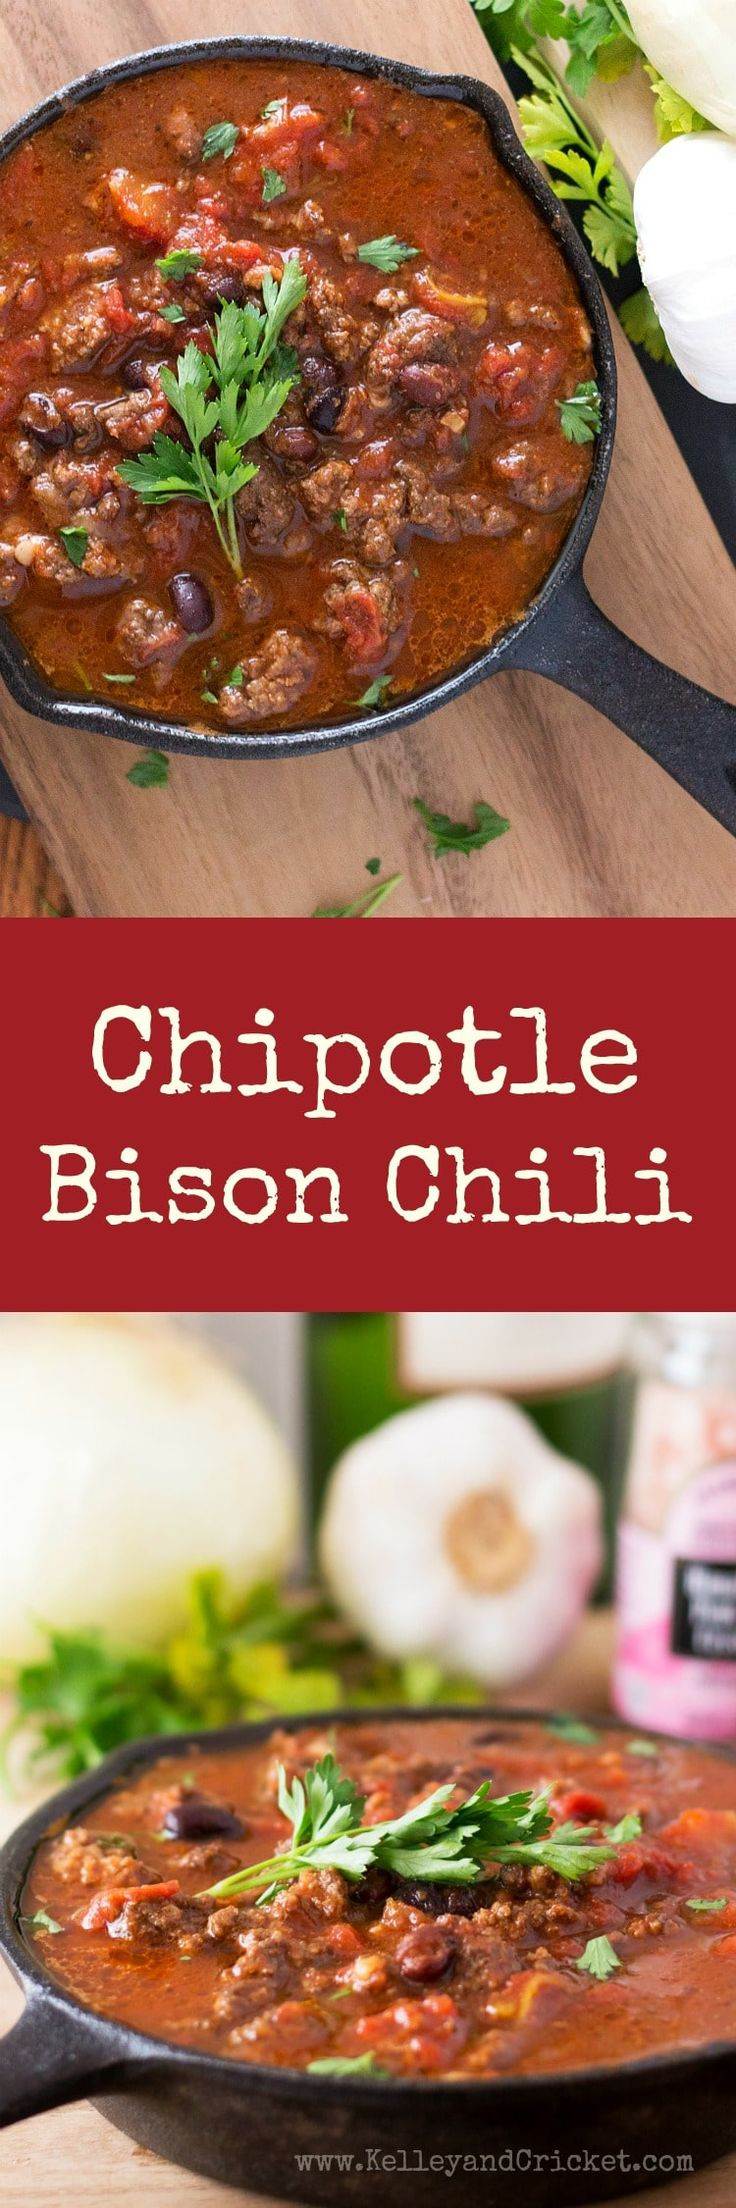 Healthy Ground Bison Recipes
 Best 25 Ground bison recipes ideas on Pinterest